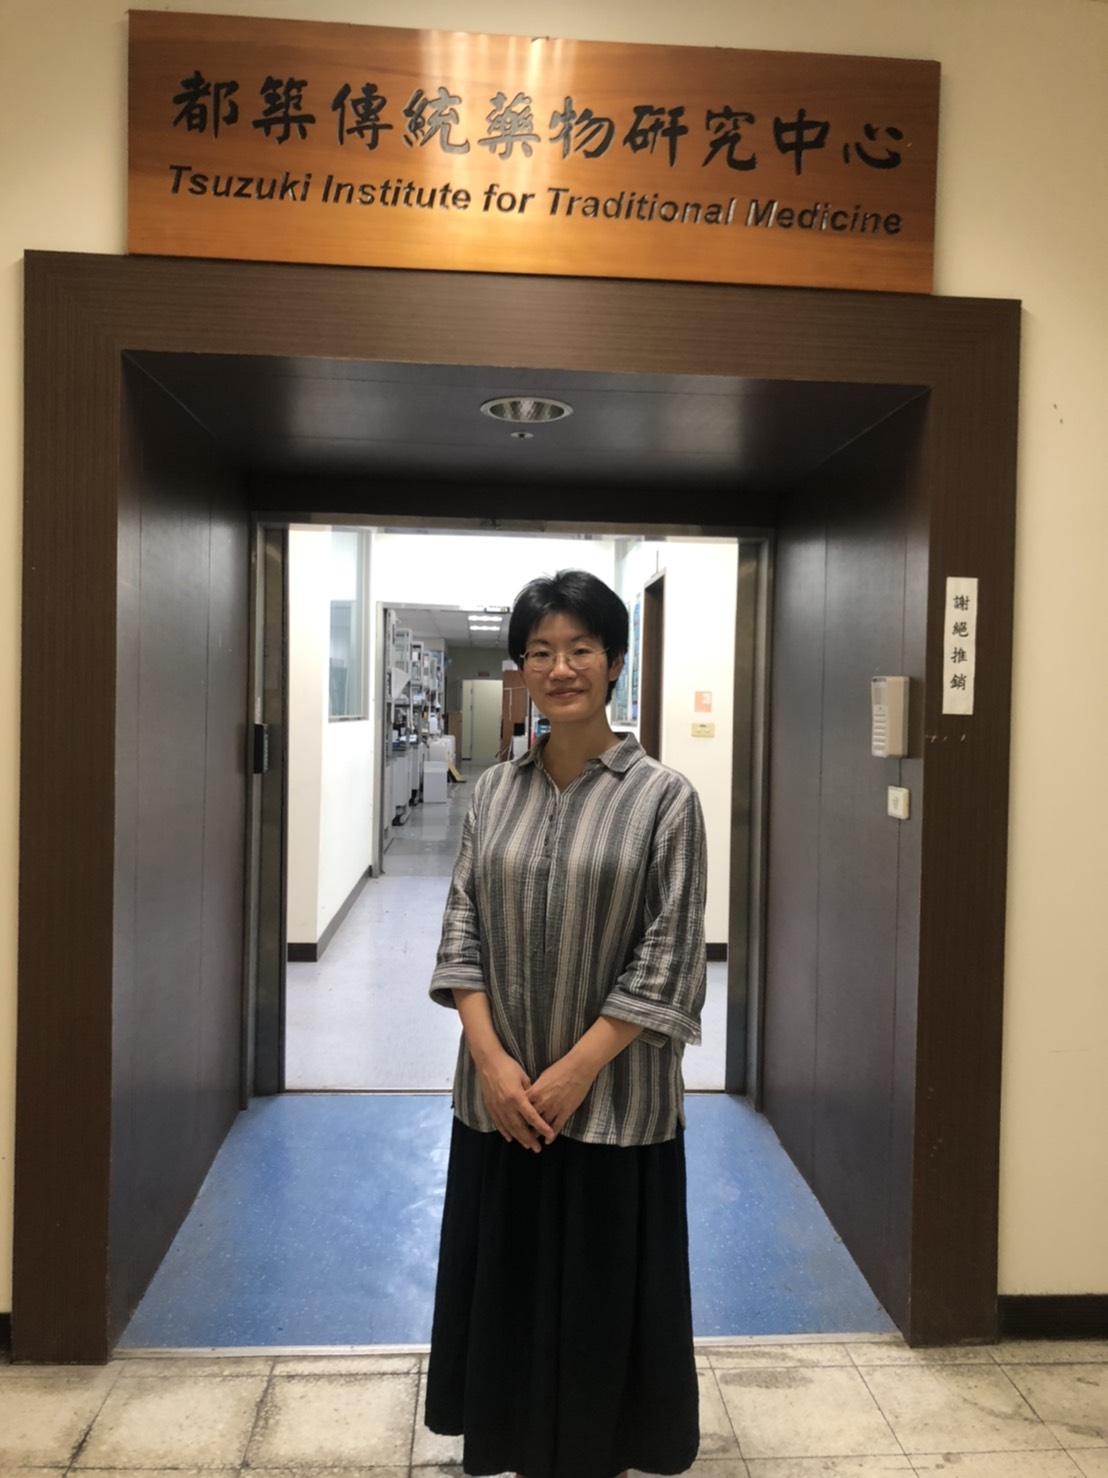 
	日籍學者糸數七重博士於「都築傳統藥物研究中心」。
